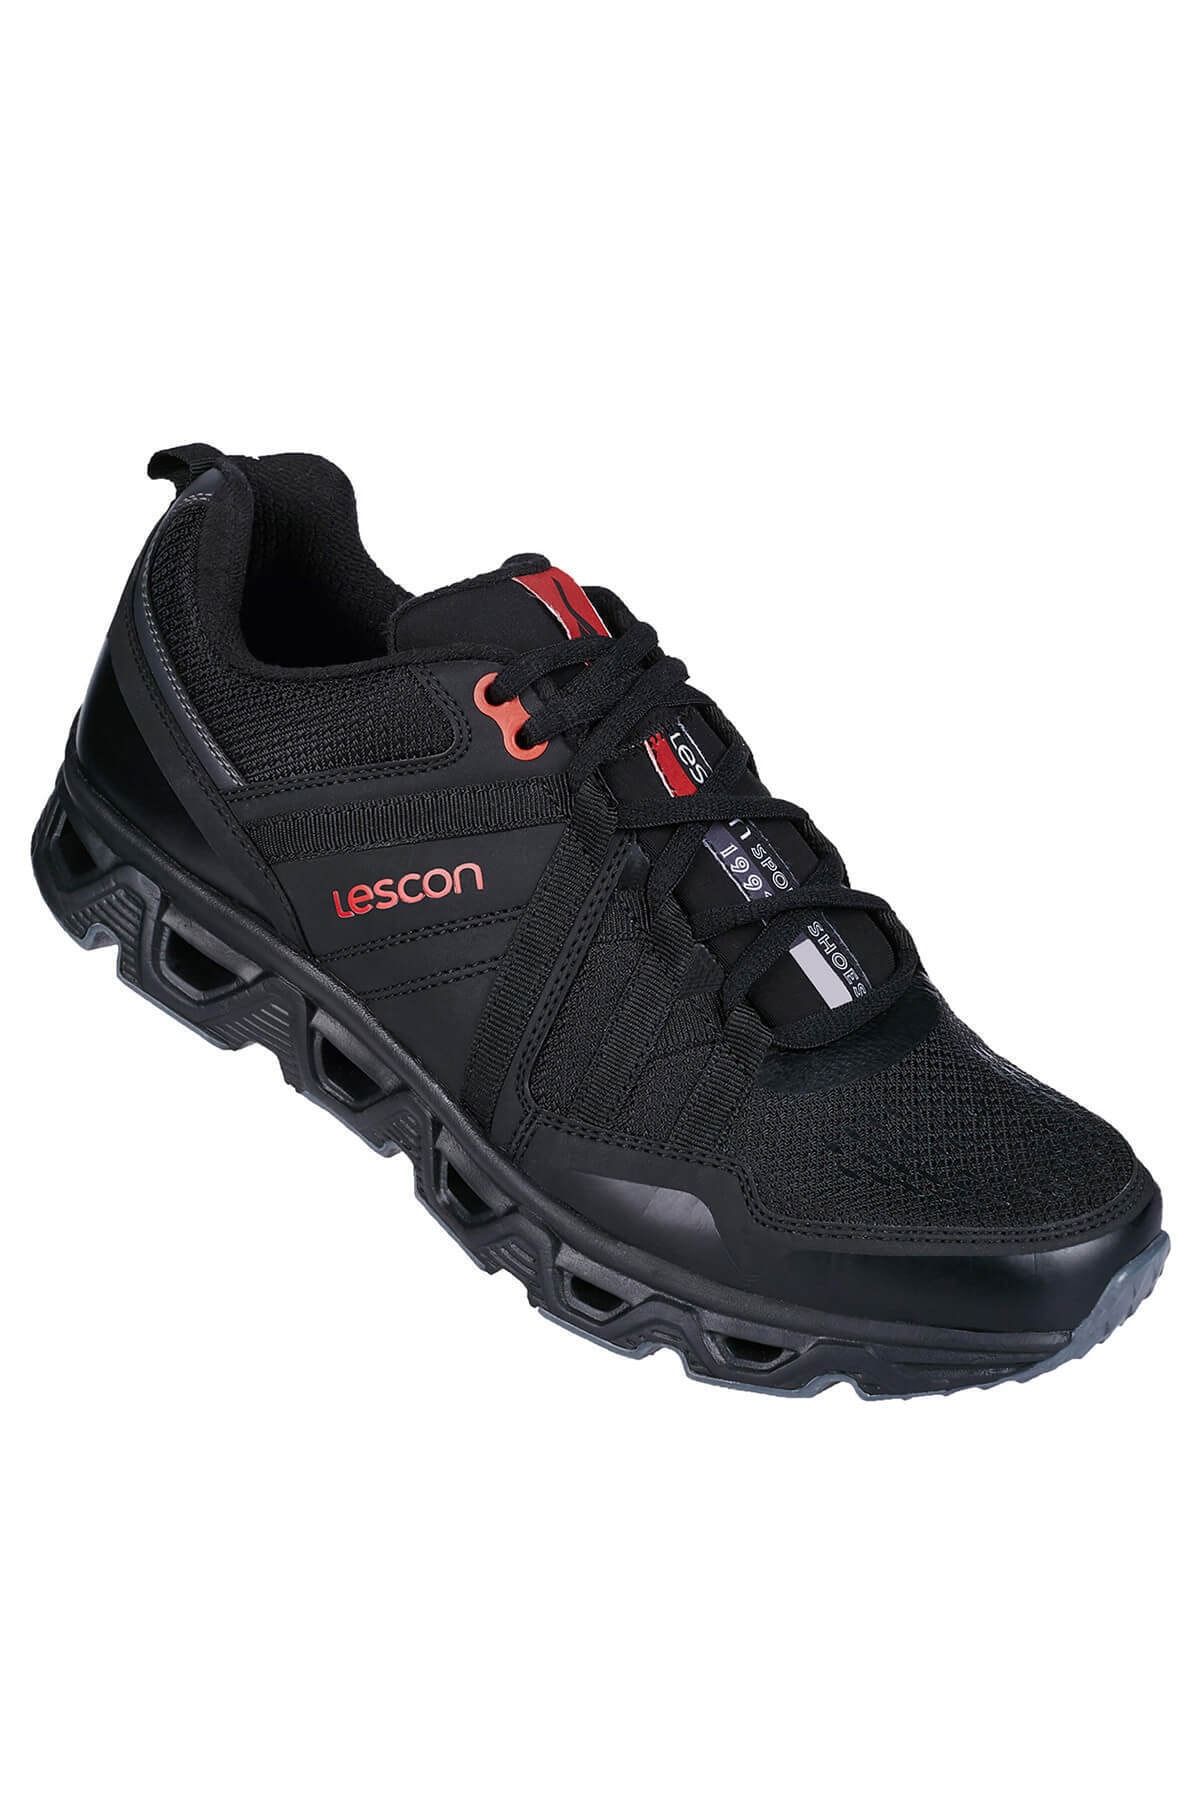 Lescon L-6114 Stream Kadın Günlük Spor Ayakkabı